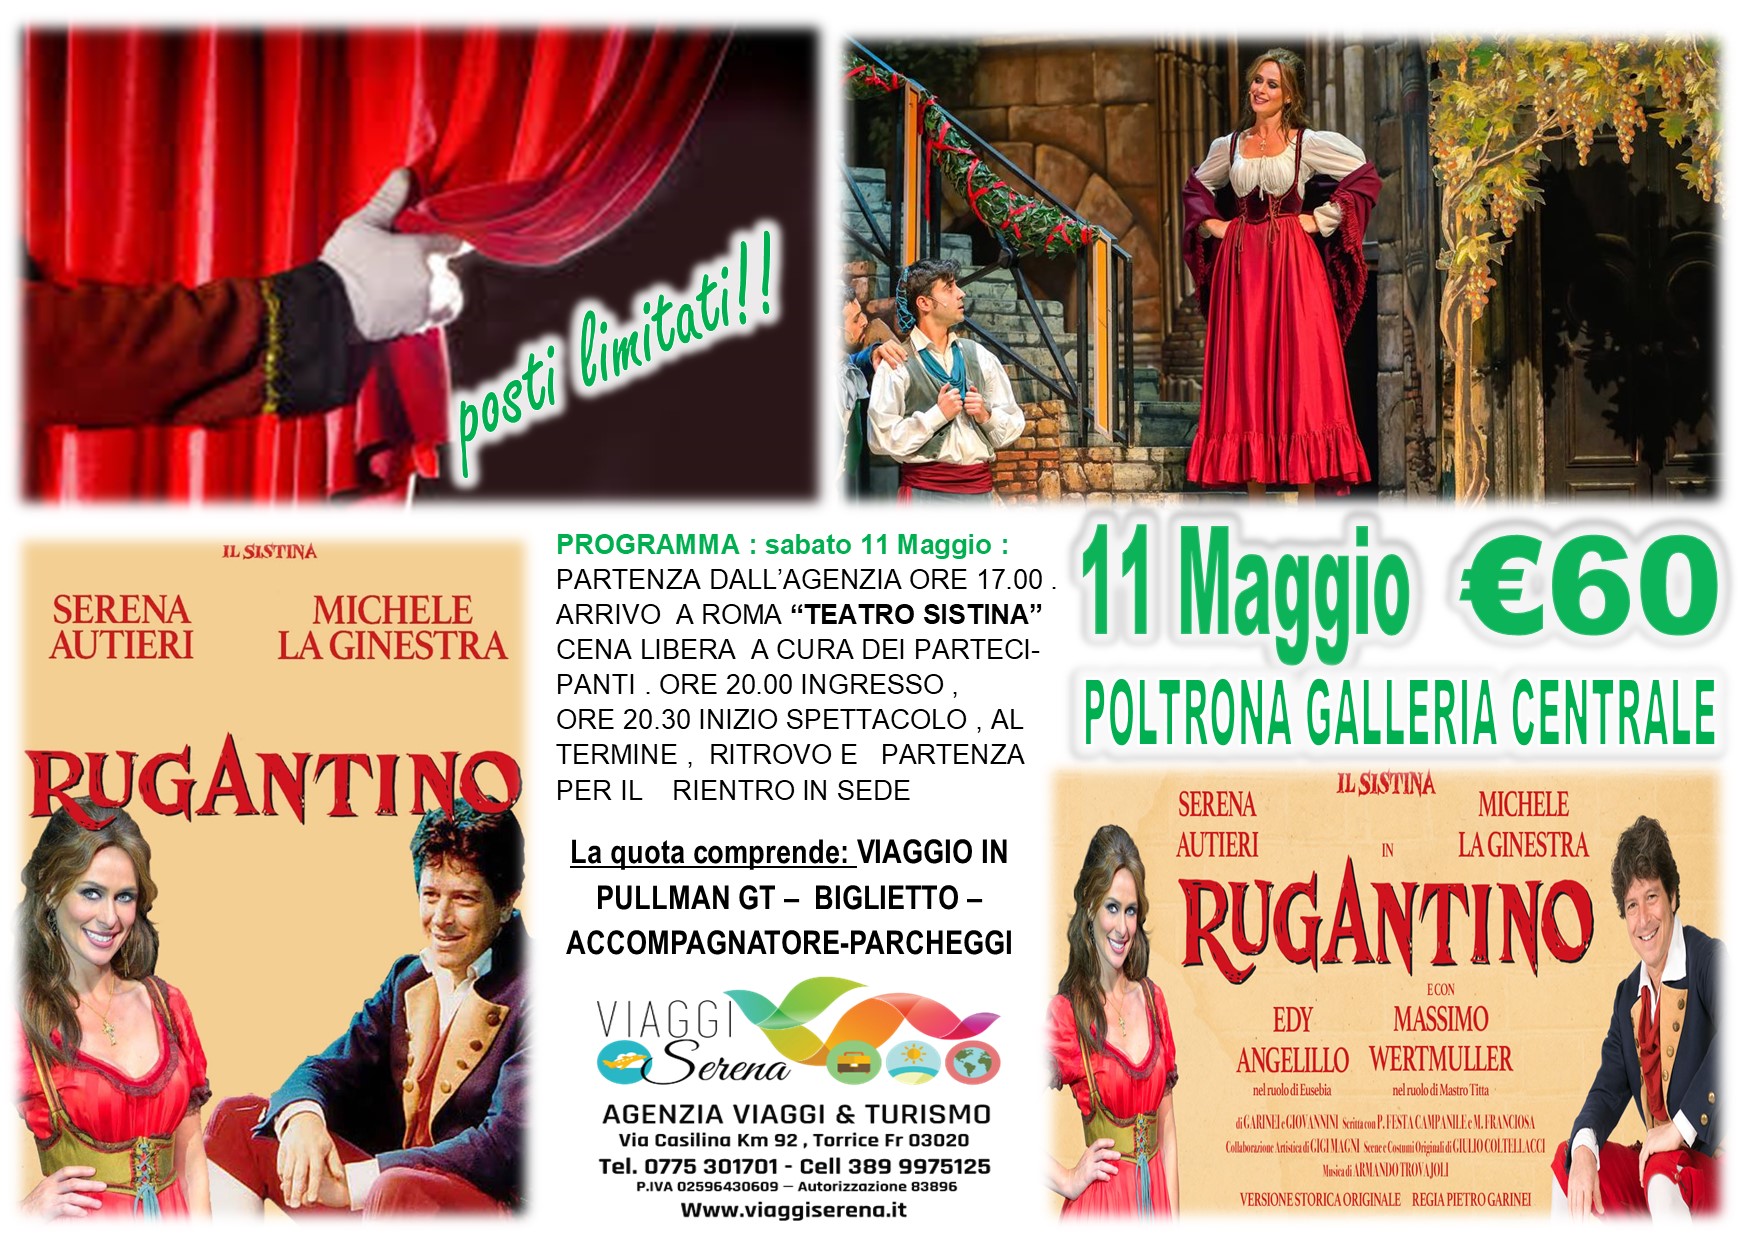 Viaggi di gruppo: TEATRO “Rugantino” Galleria Centrale  Teatro Sistina 11 Maggio € 60,00